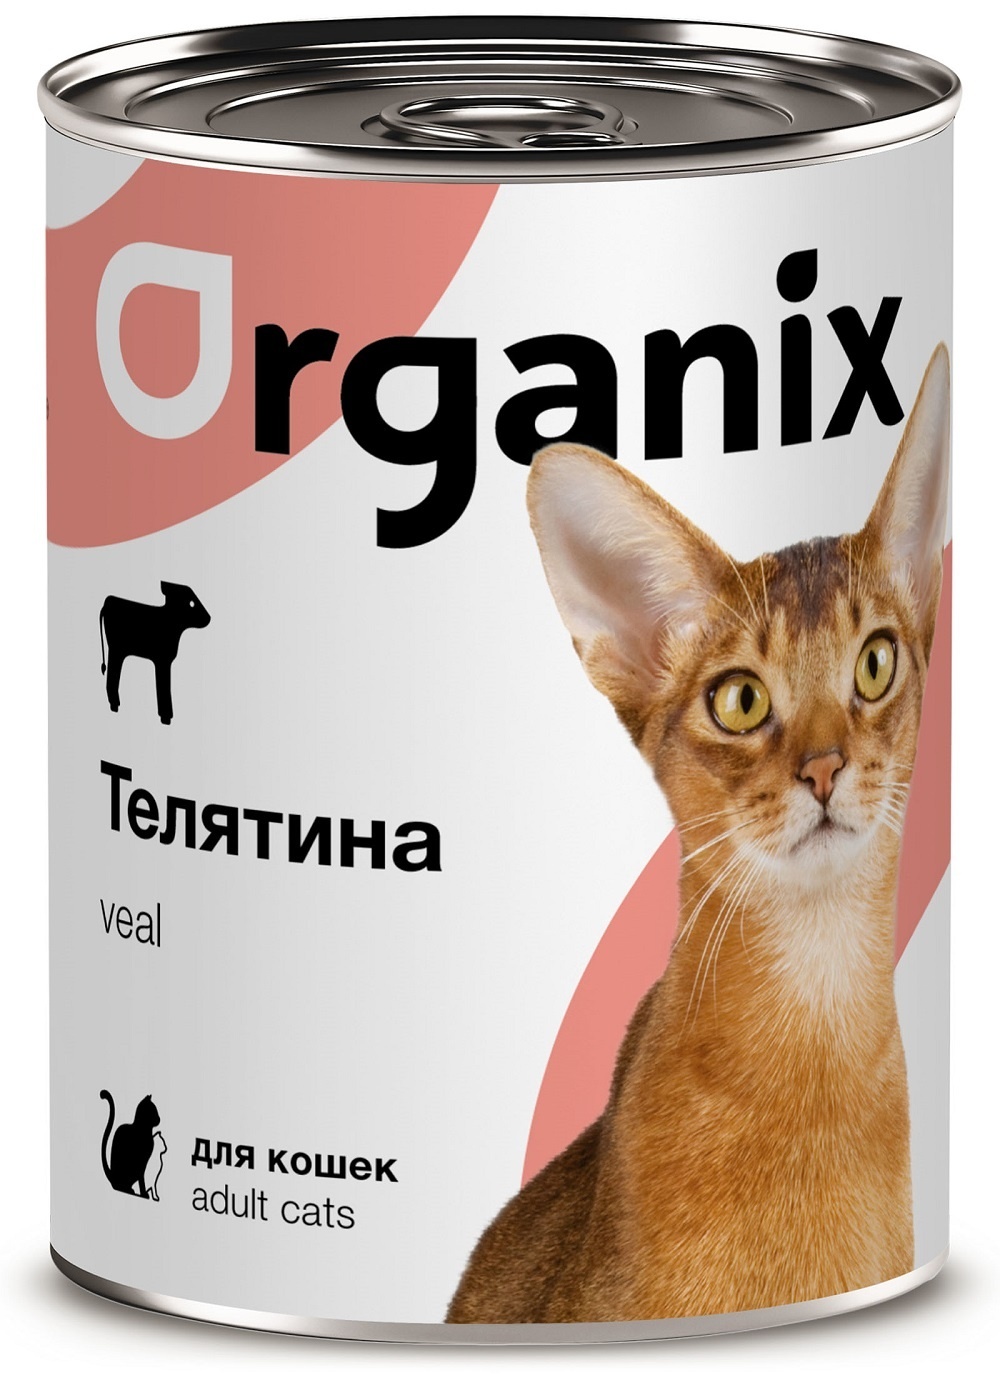 Organix консервы с телятиной для кошек (410 г)